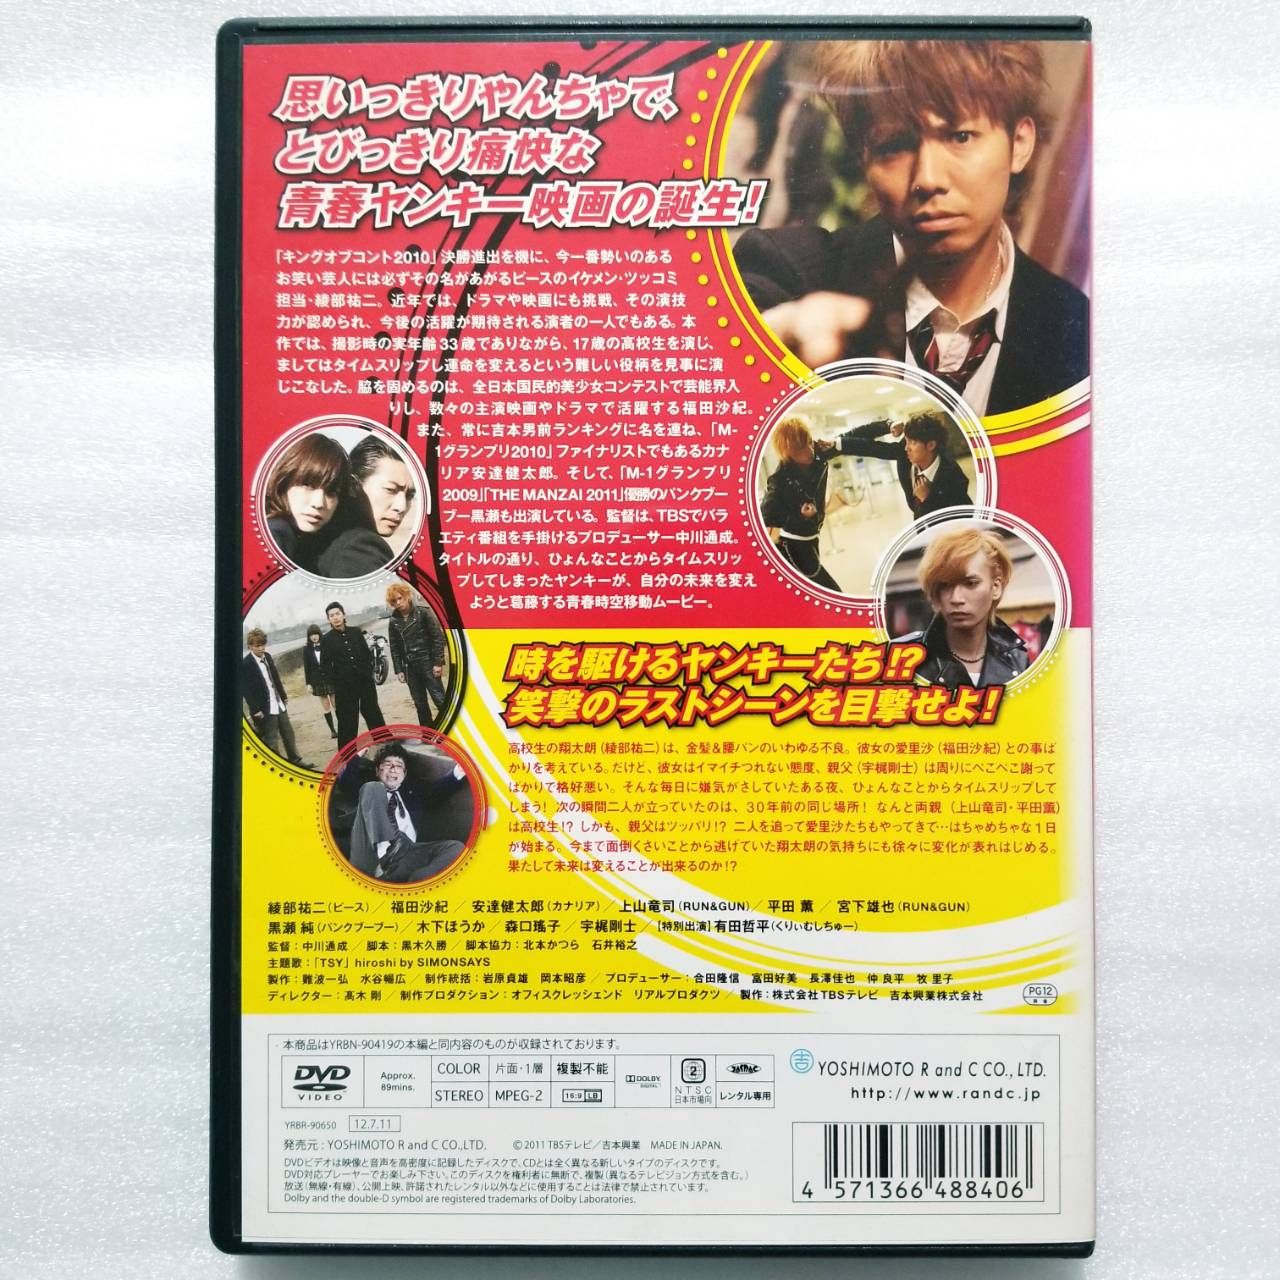 タイムスリップヤンキー DVD レンタル落ち - ブルーレイ